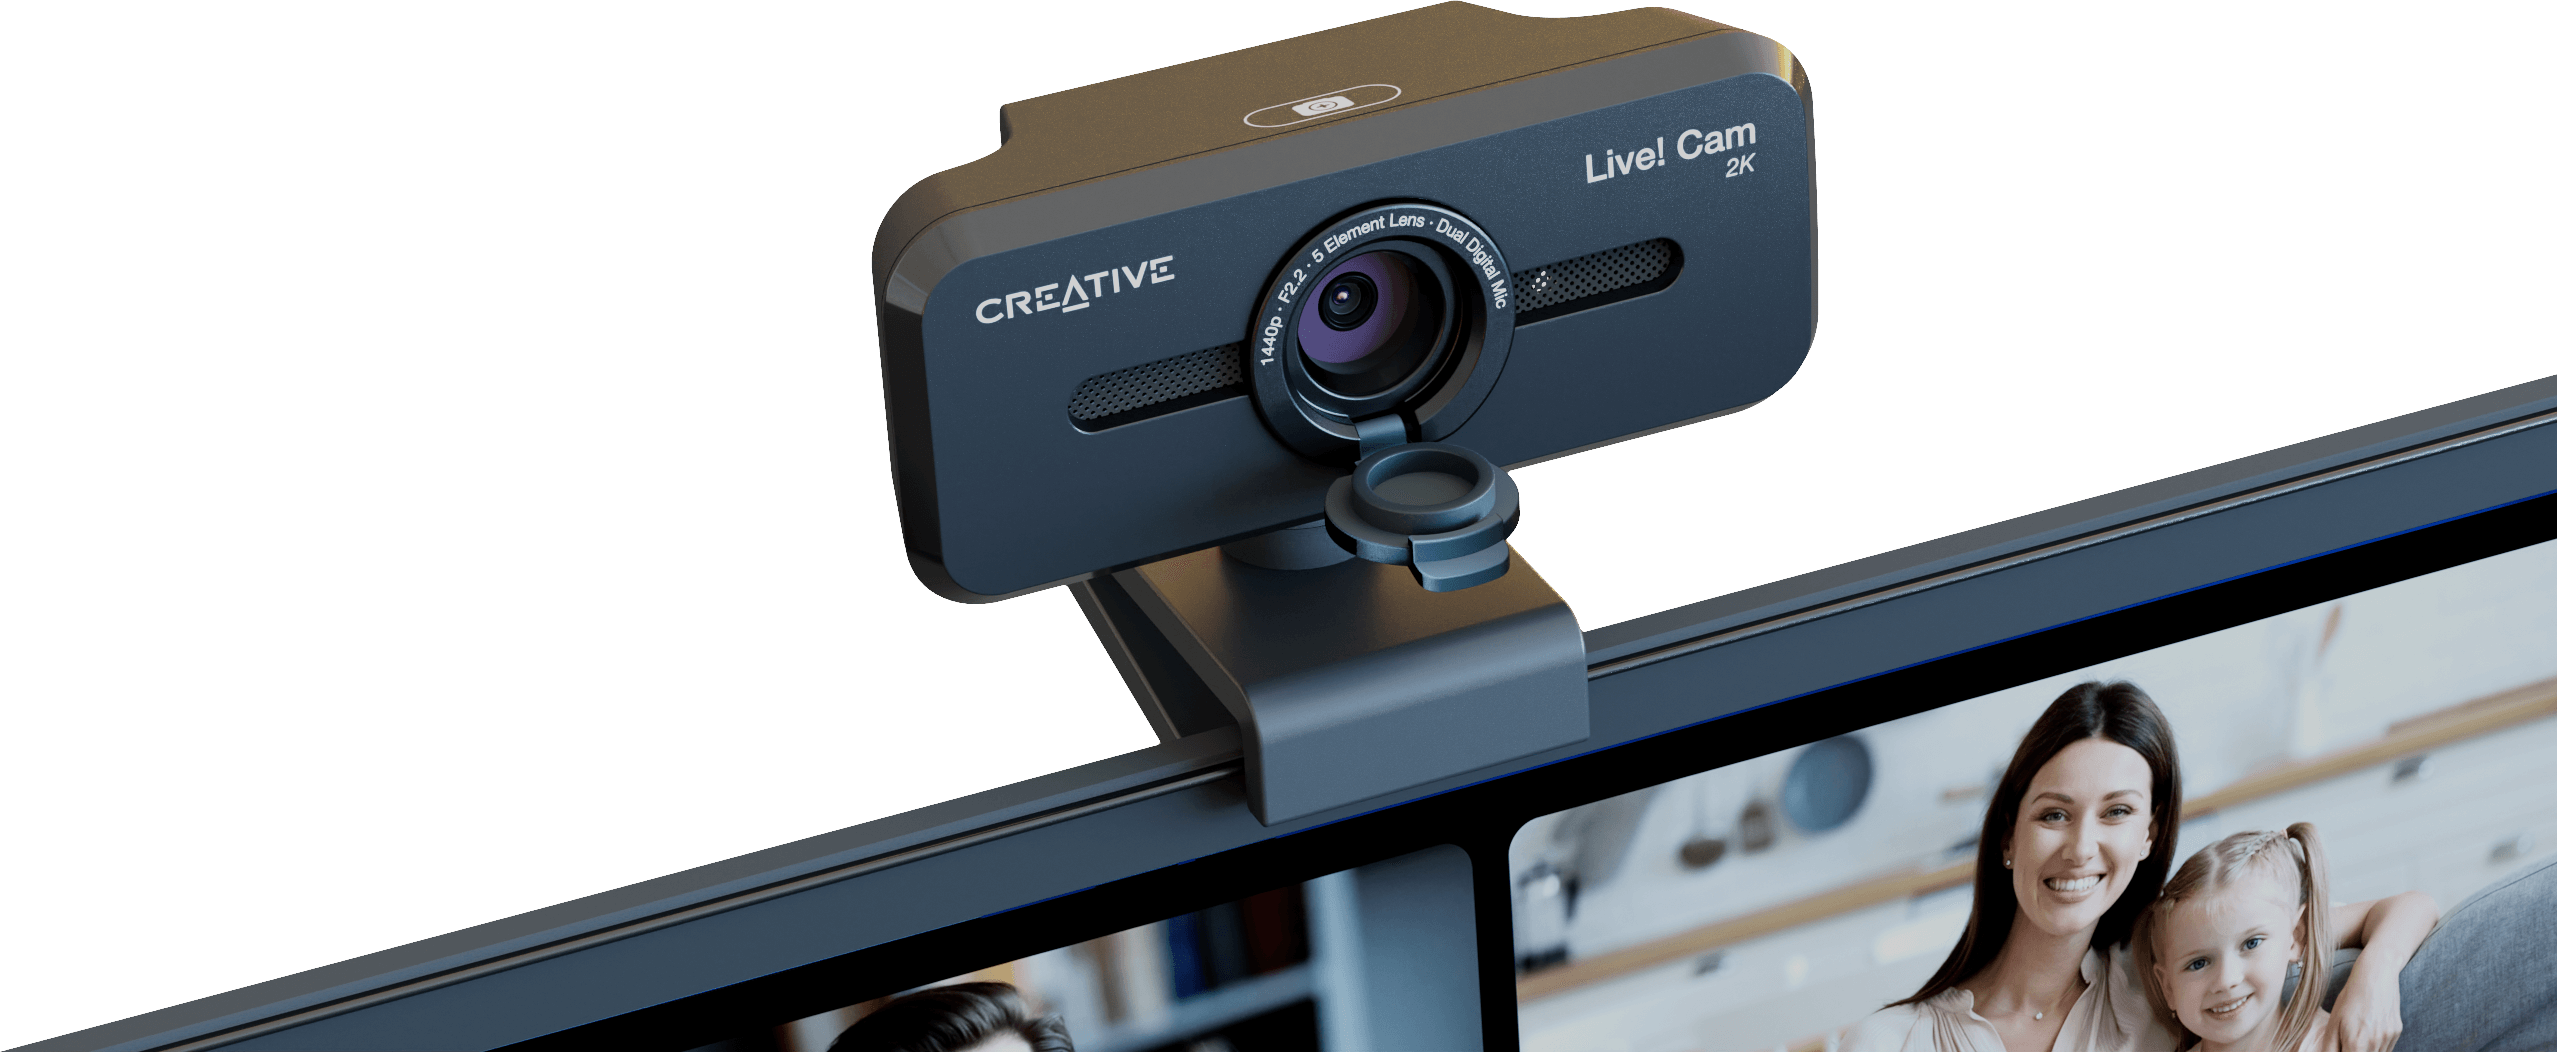 Kamera internetowa Creative Live! Cam Sync V3 - po prostu ją podłącz i bądź gotowy do działania!